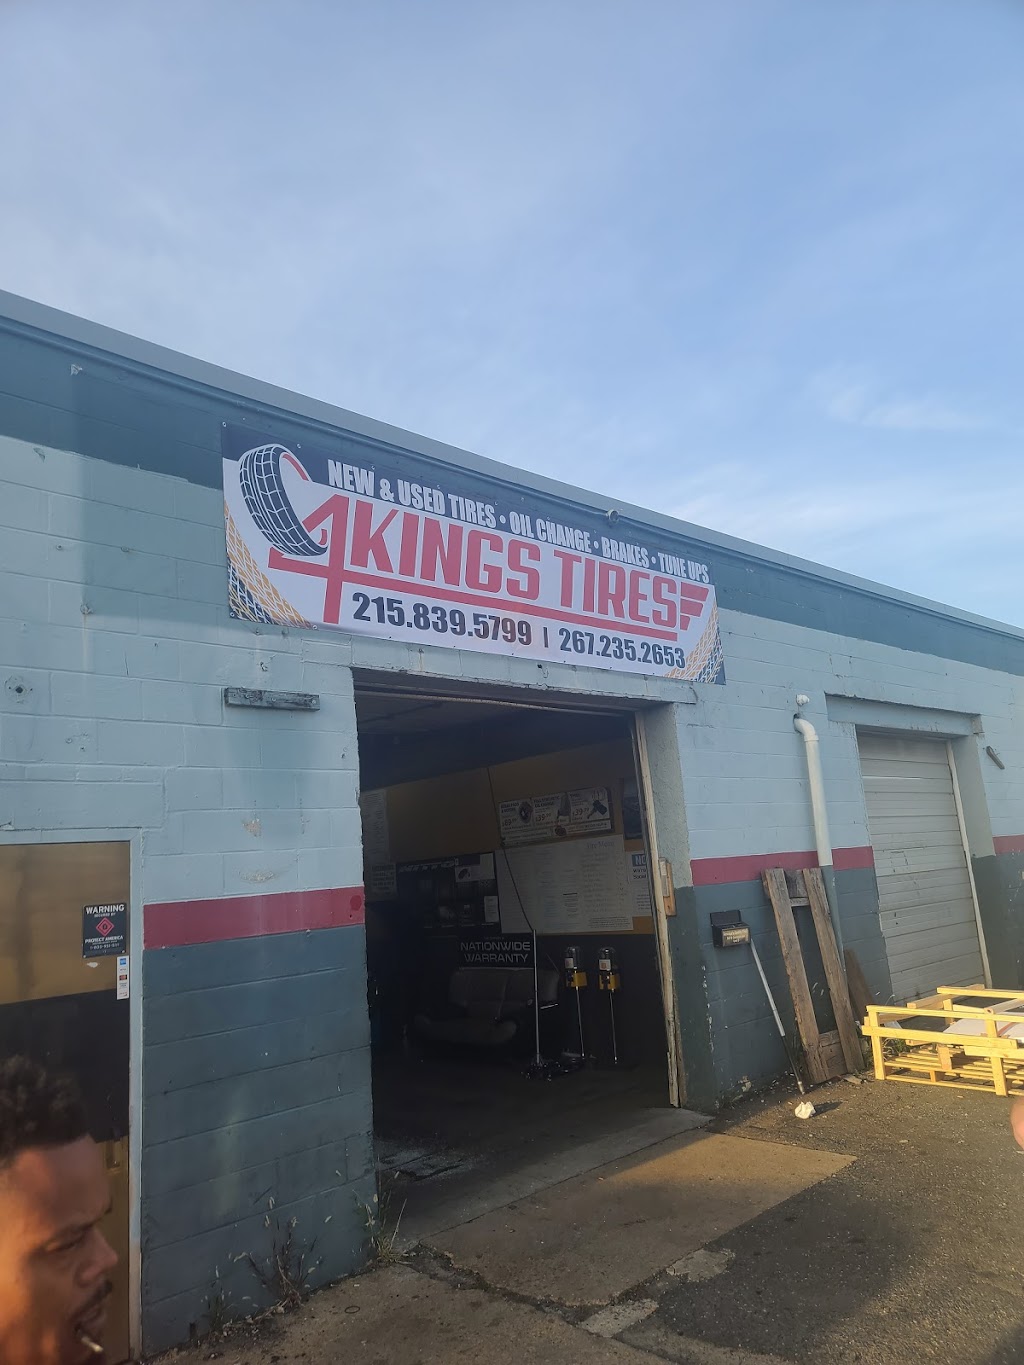 4 Kings Tires | 5019 Cottman Ave, Philadelphia, PA 19135 | Phone: (215) 839-5799